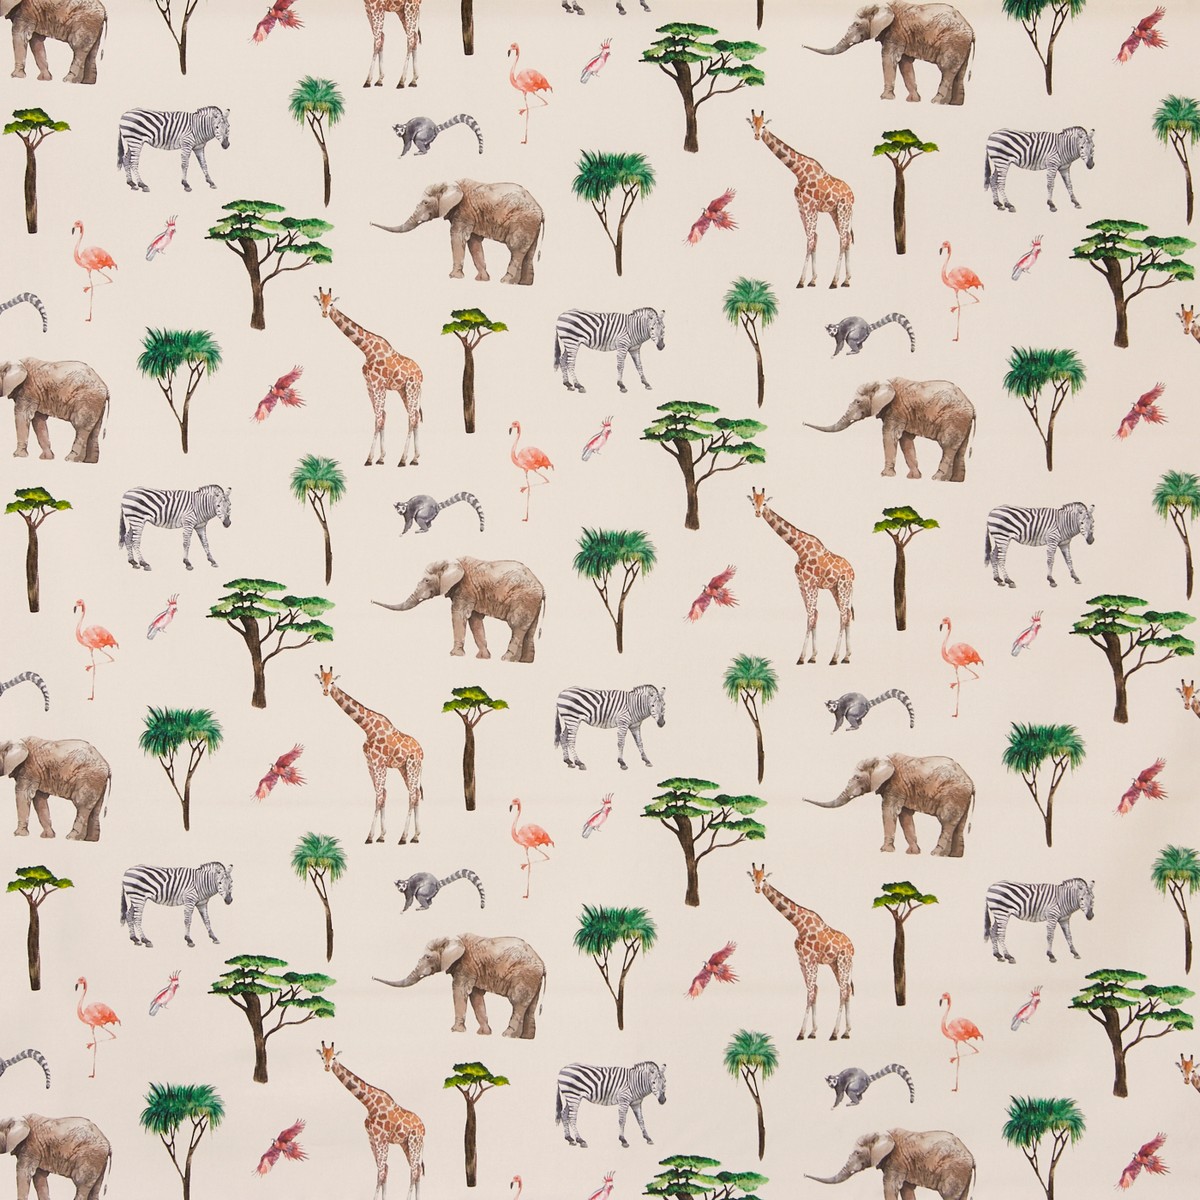 On Safari Jungle Fabric by Prestigious Textiles